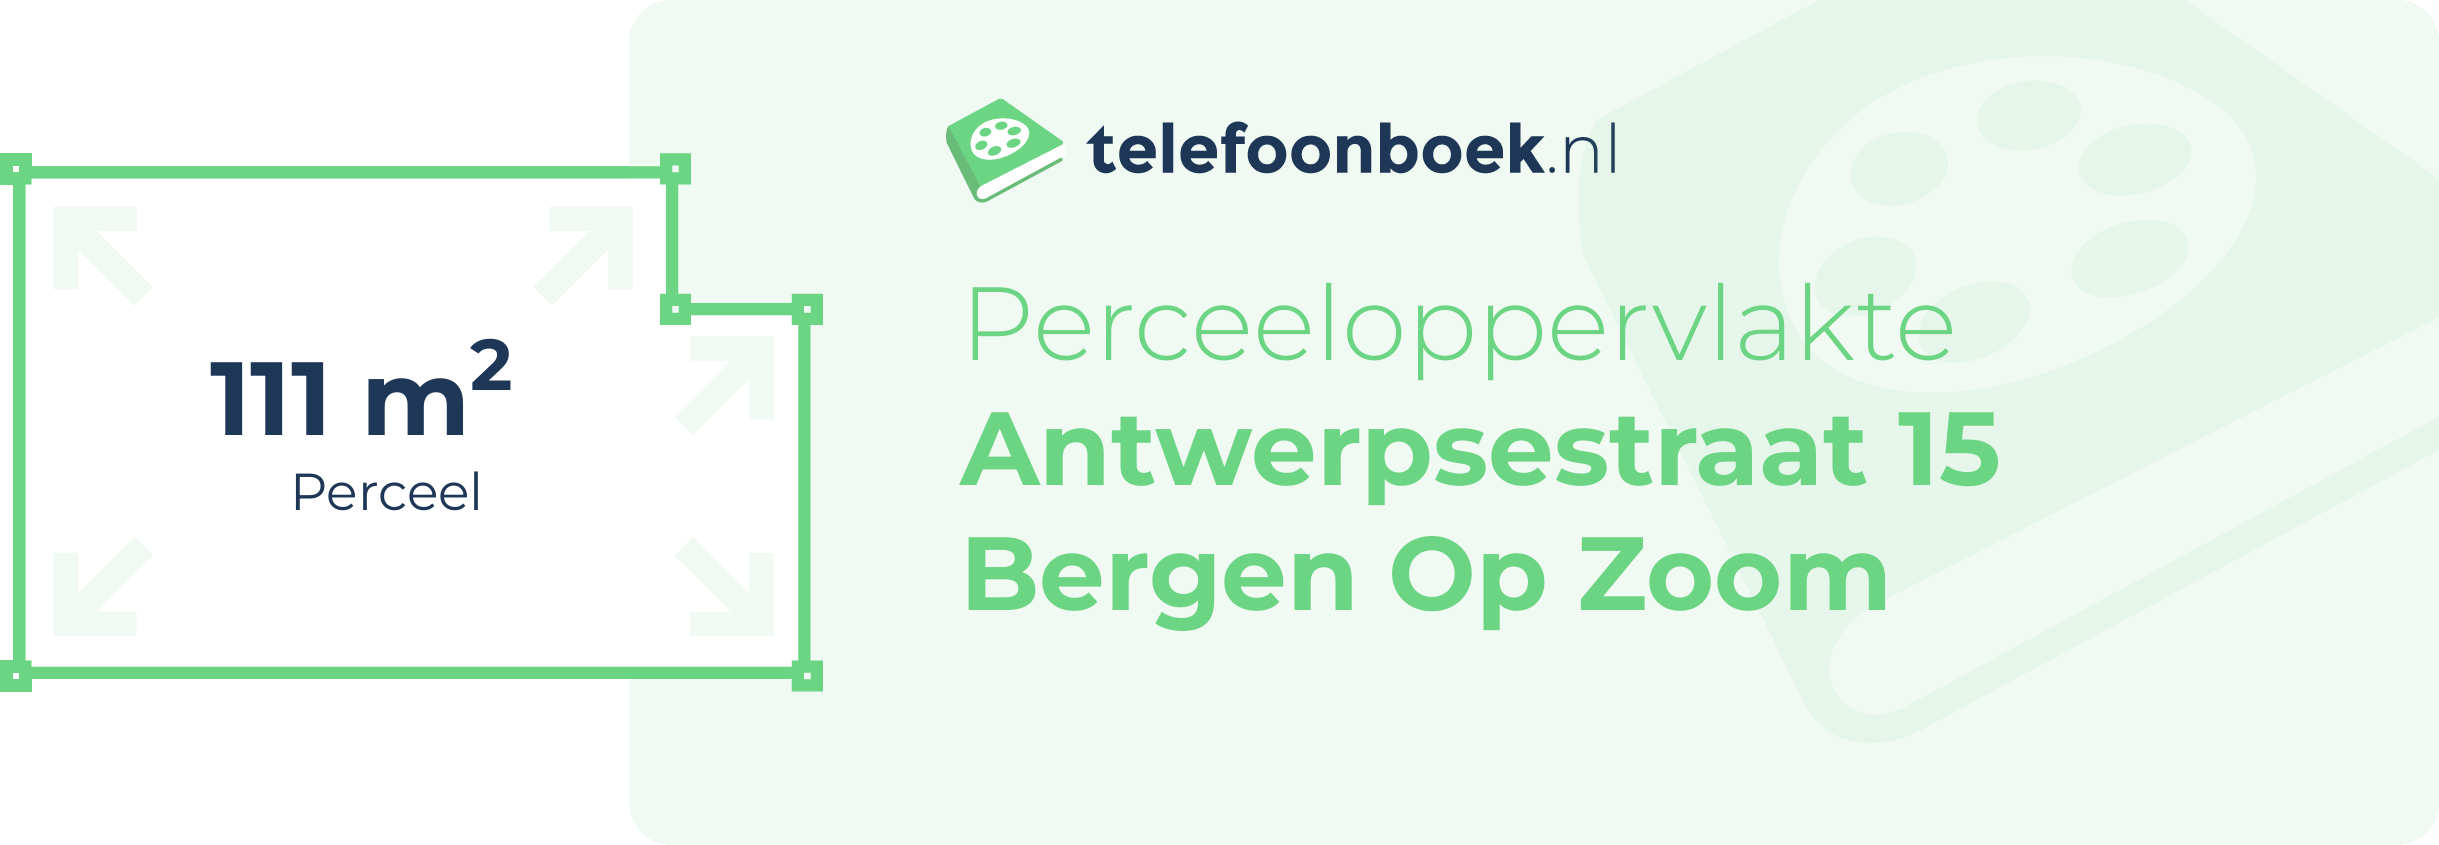 Perceeloppervlakte Antwerpsestraat 15 Bergen Op Zoom